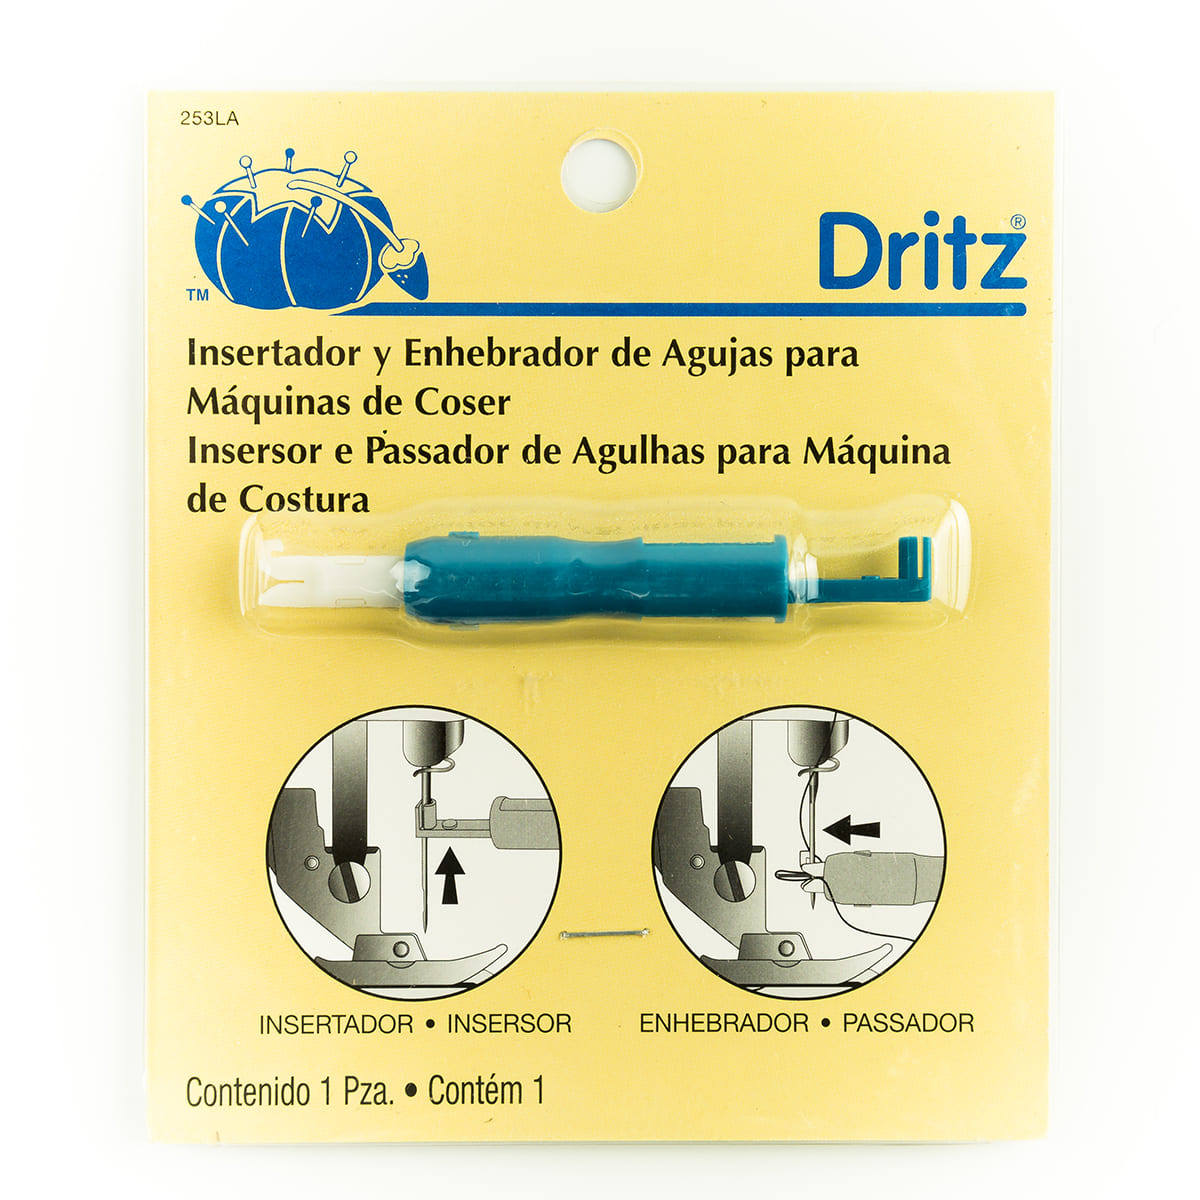 Insertador y enhebrador de agujas para máquina de coser Dritz